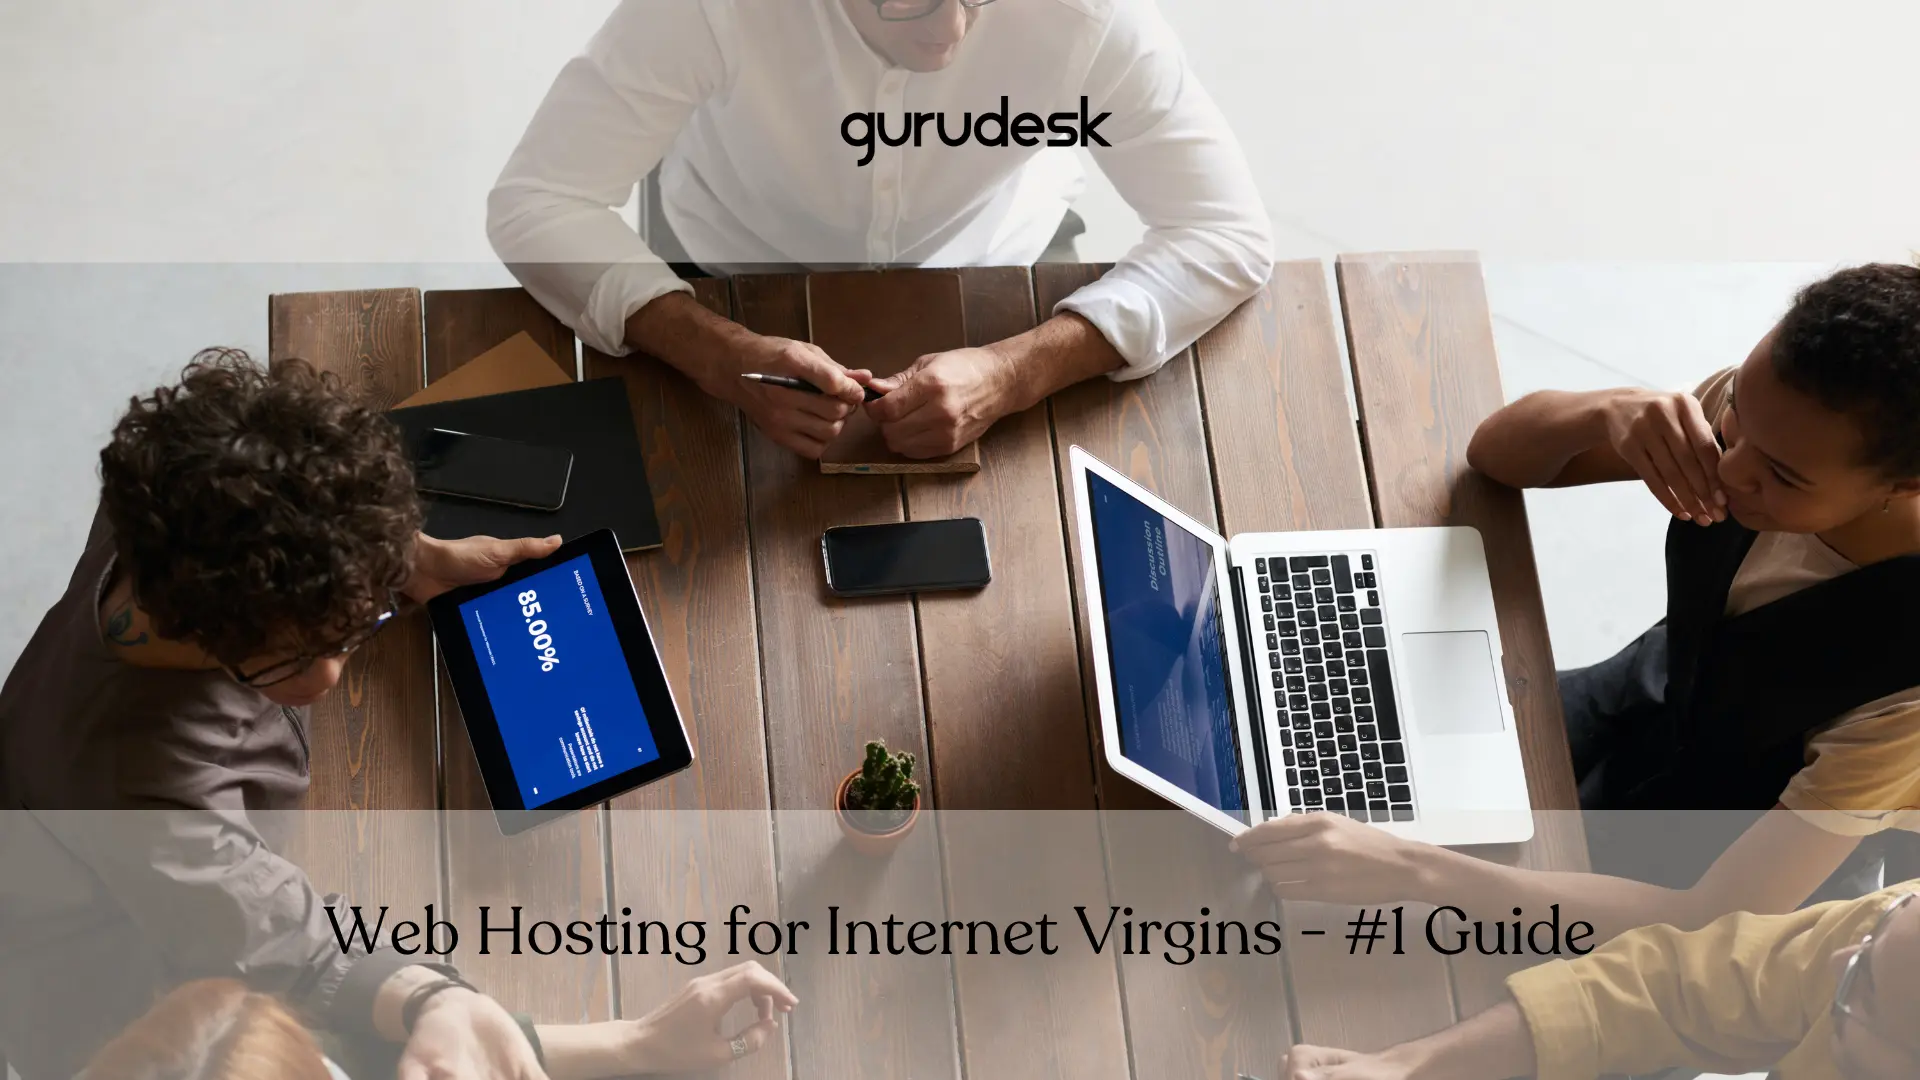 web hosting guru hosting guru desk hosting guru hosting web guru desk hosting web guru desk web hosting gurudesk webhosting guru webhosting